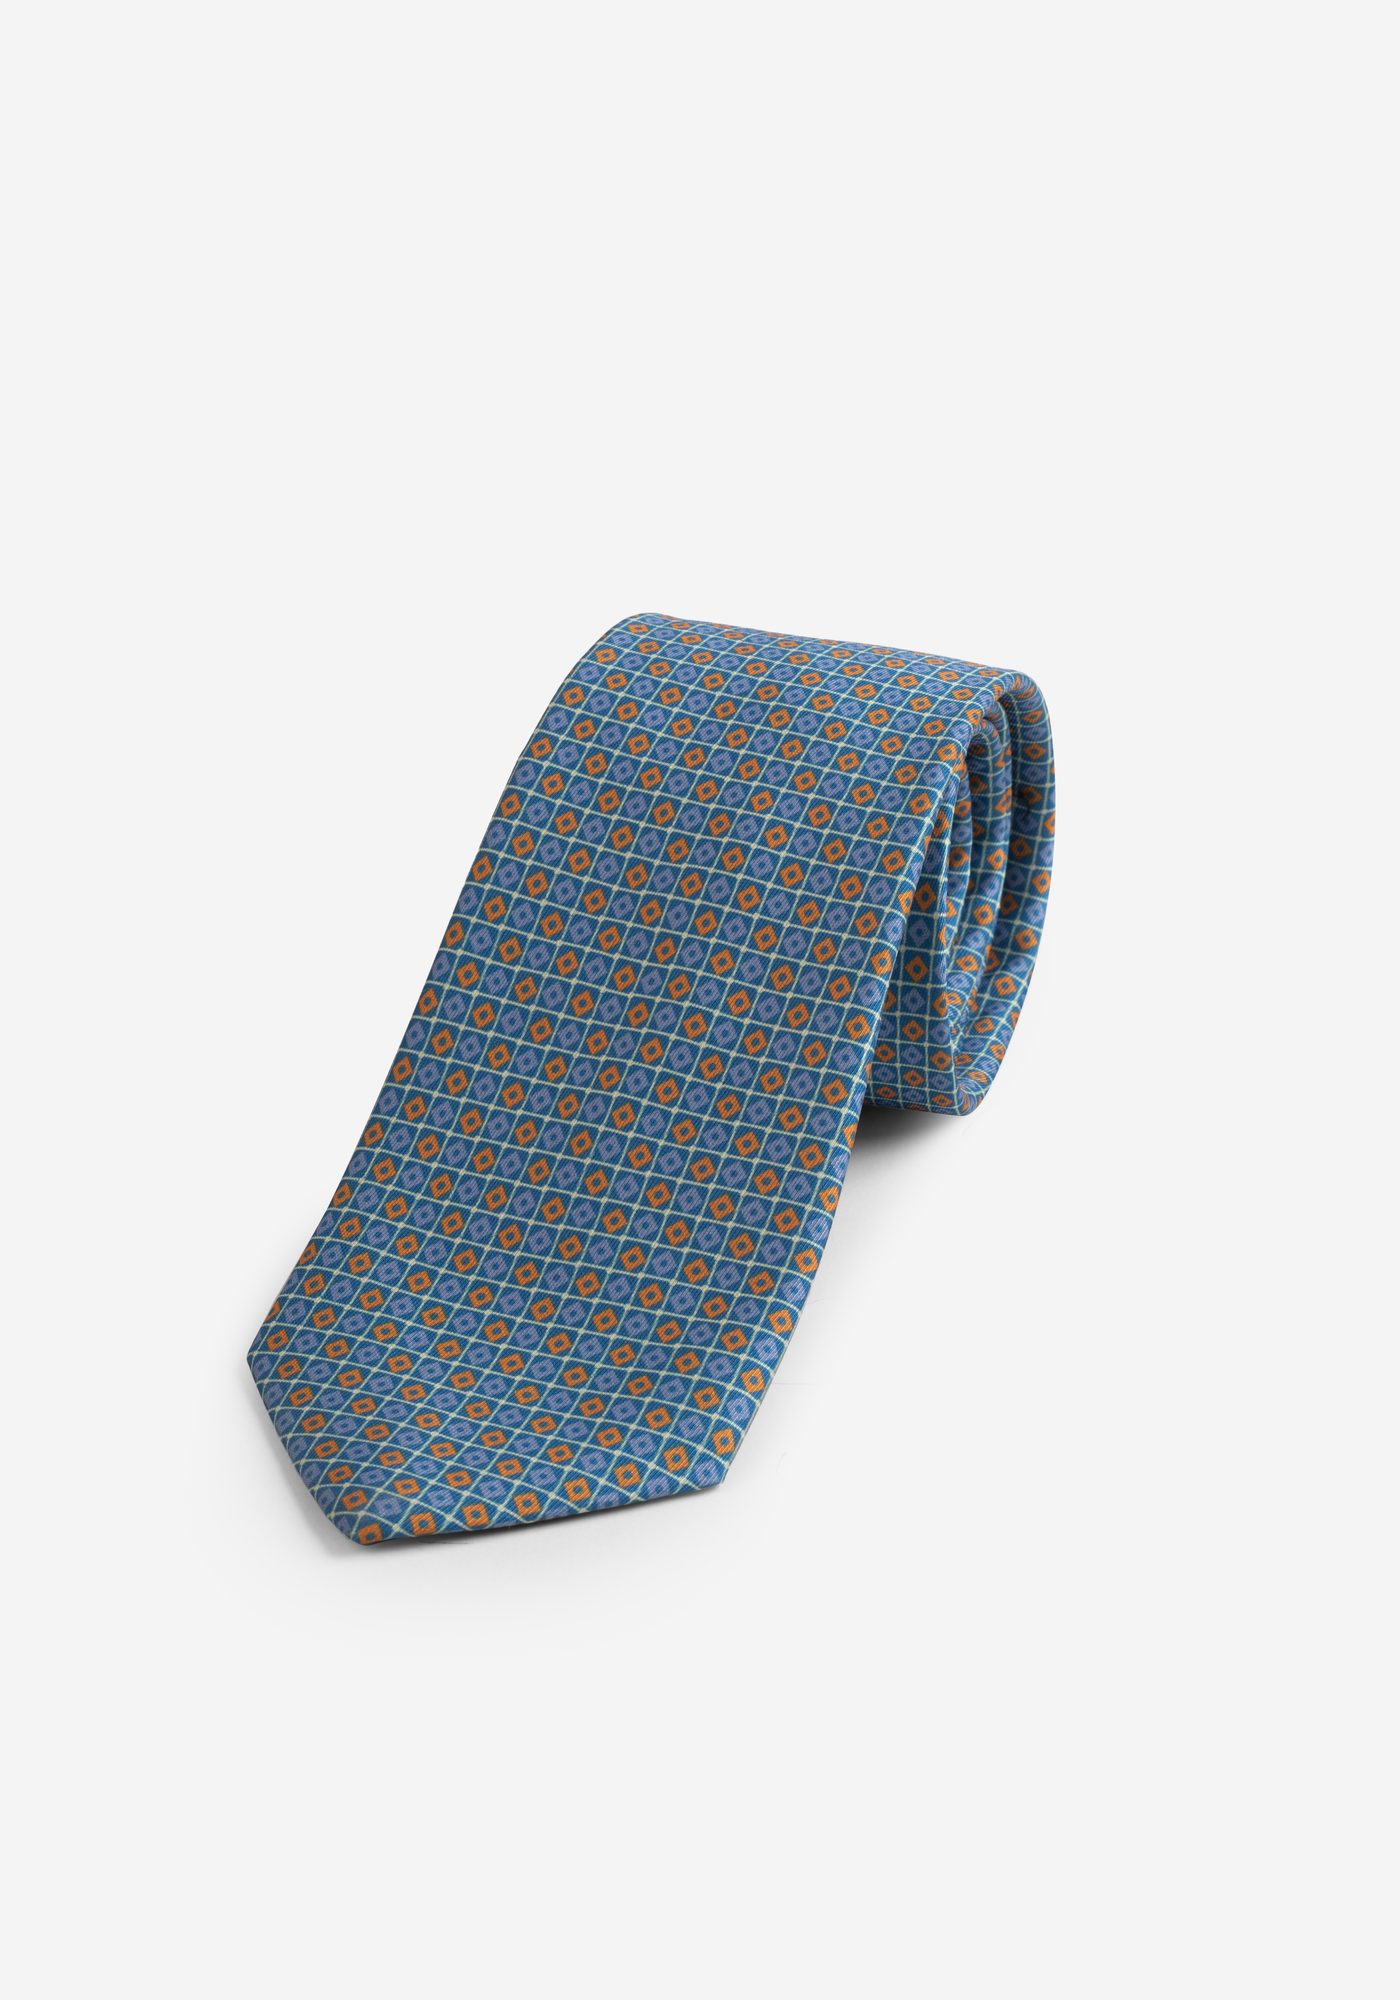 Aqua Blue Print Micro Fiber Tie